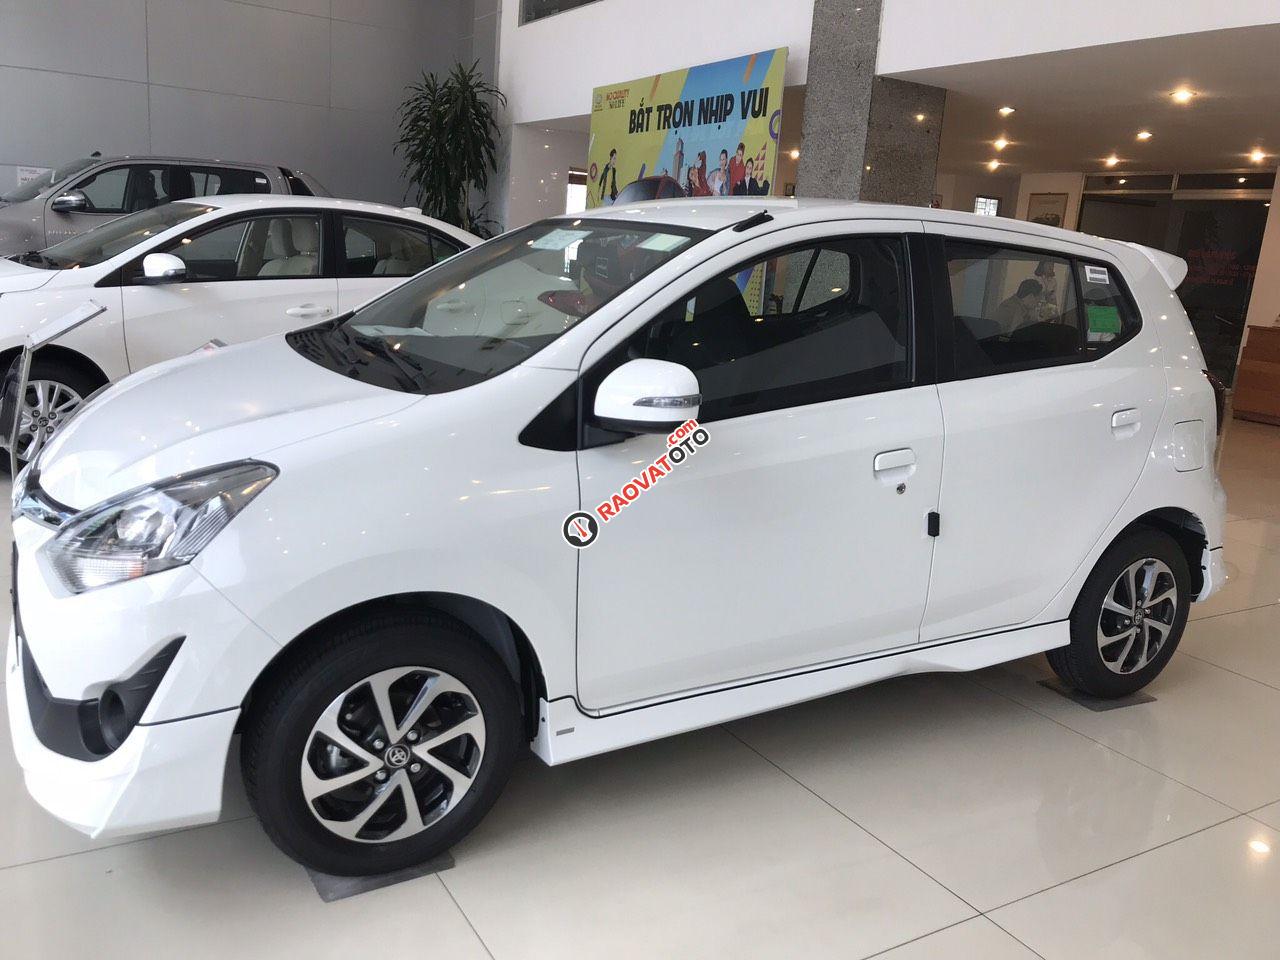 Toyota Vinh-Nghệ An-Hotline: 0904.72.52.66 bán xe Wigo tự động giá rẻ nhất Nghệ An, trả góp lãi suất từ 0%-7